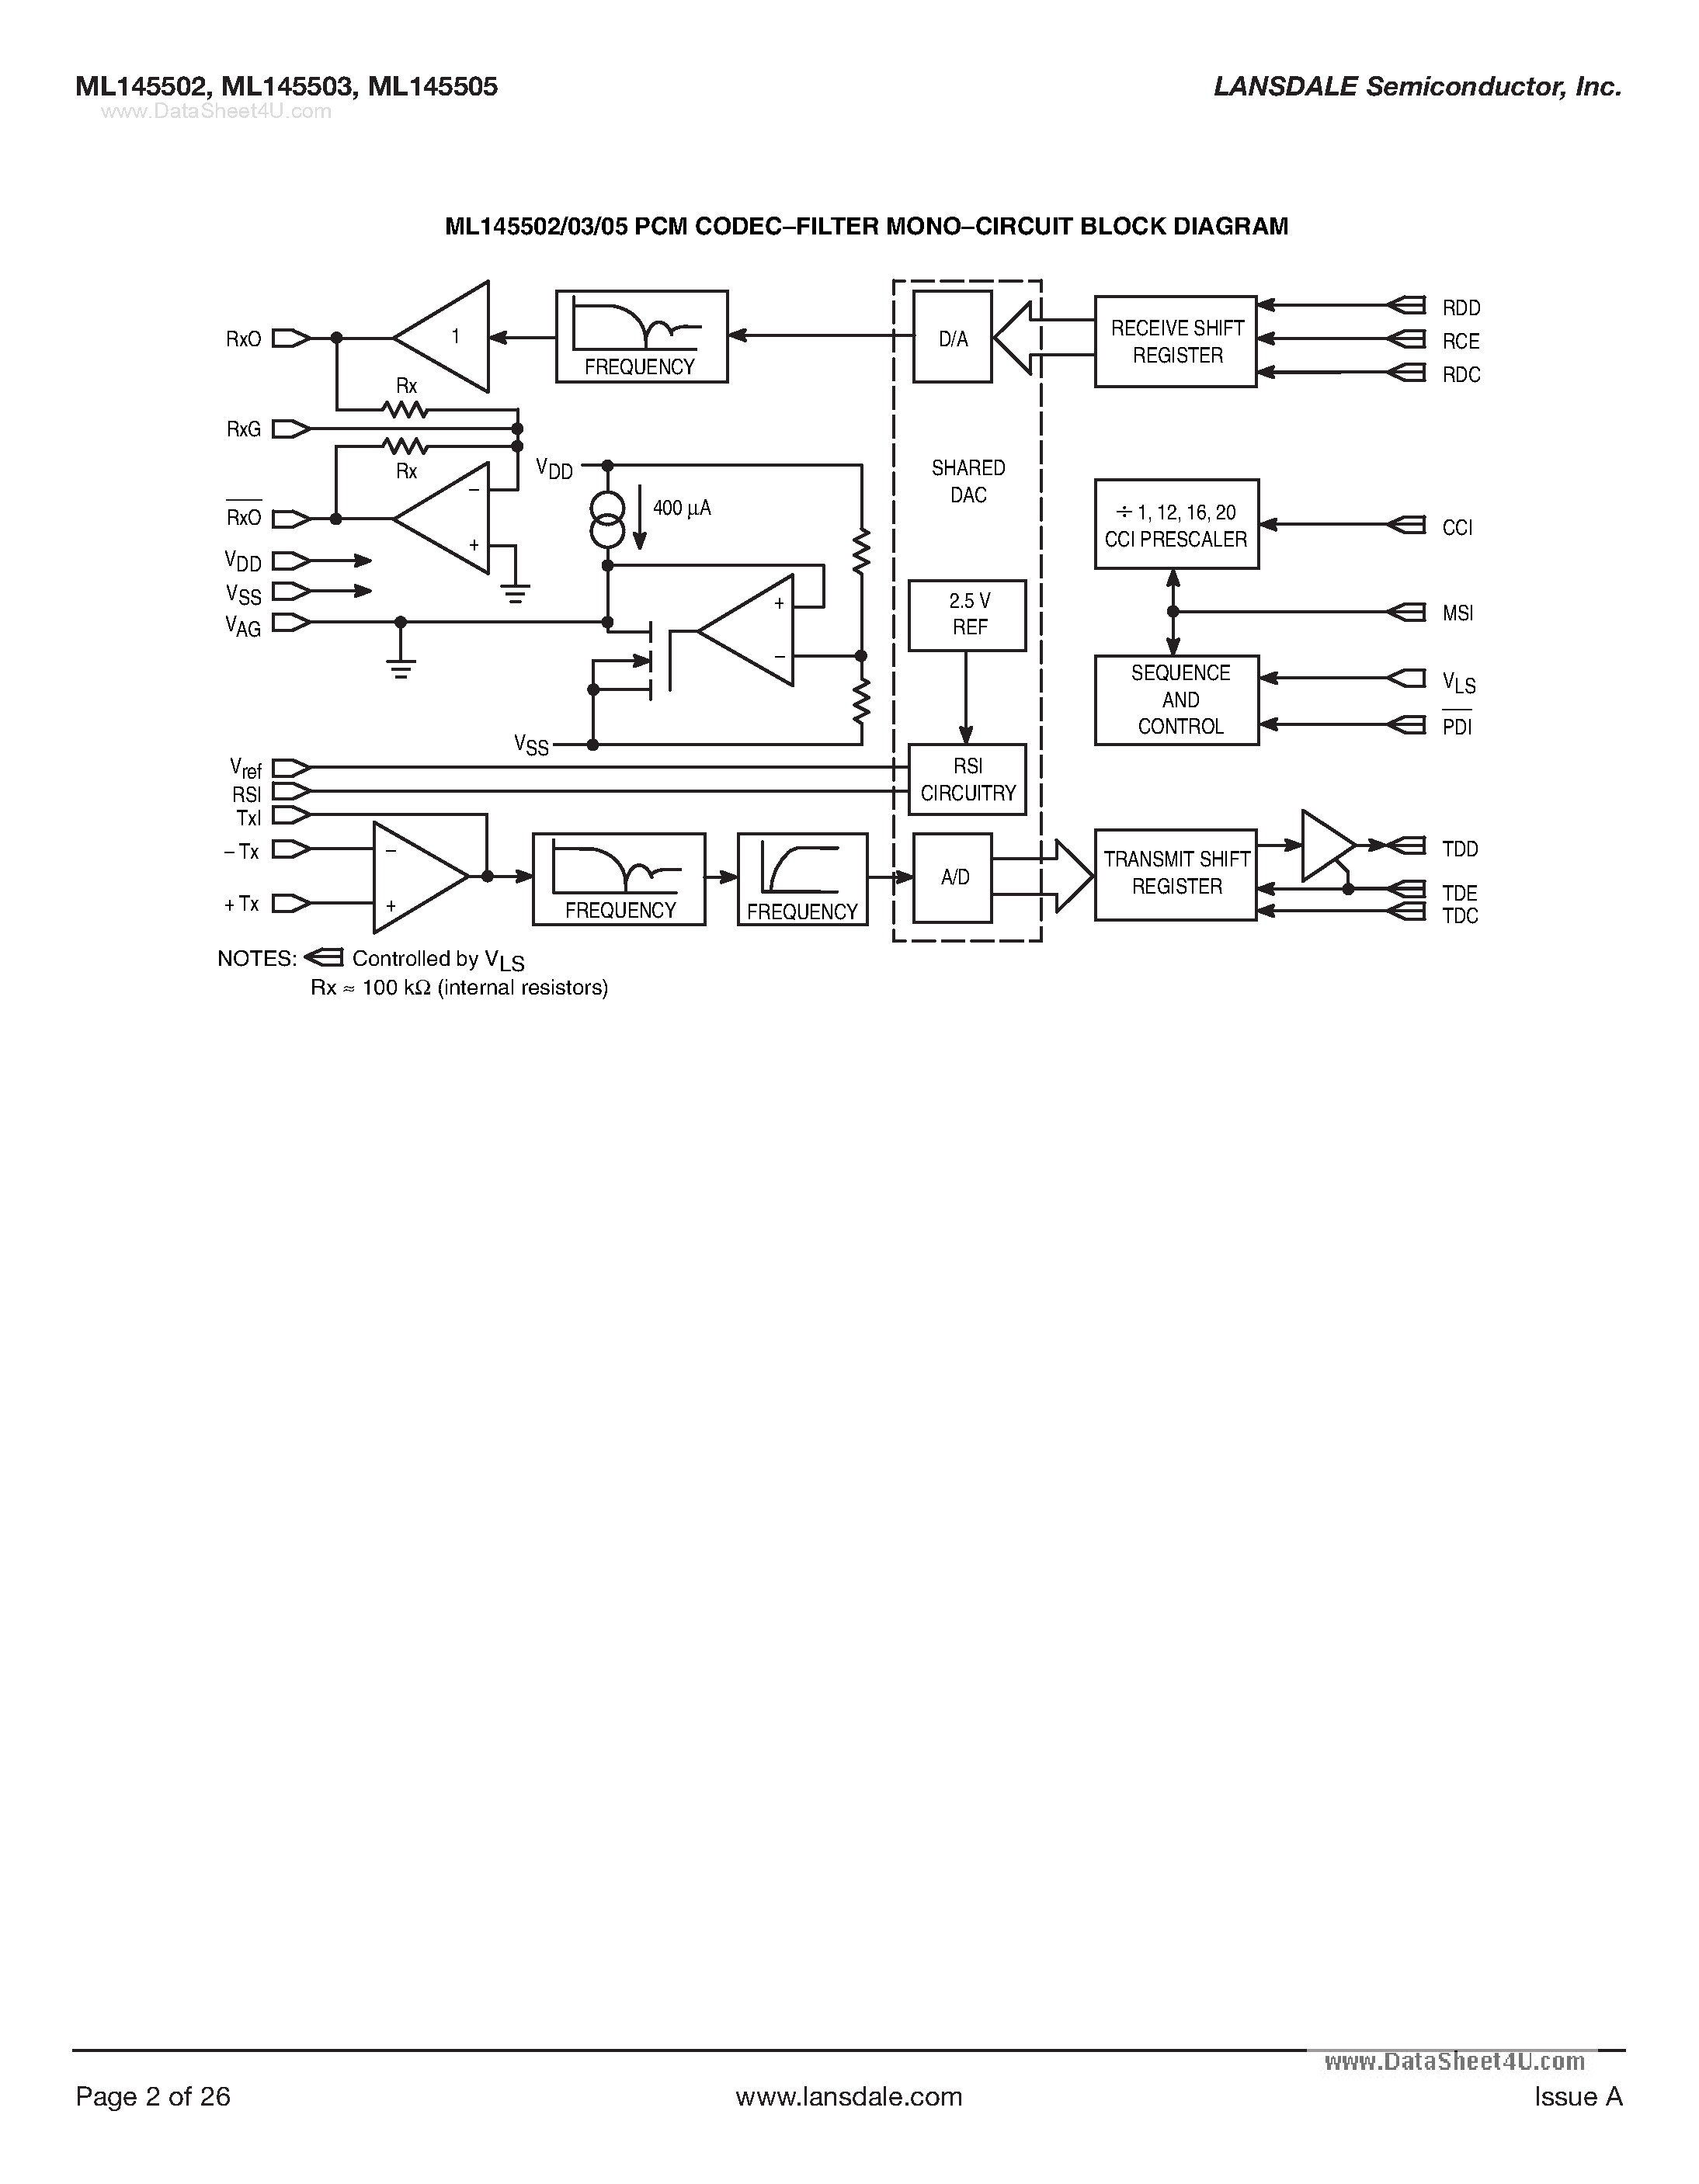 Datasheet ML145502 - (ML145502 - ML145505) PCM Codec-Filter Mono-Circuit page 2